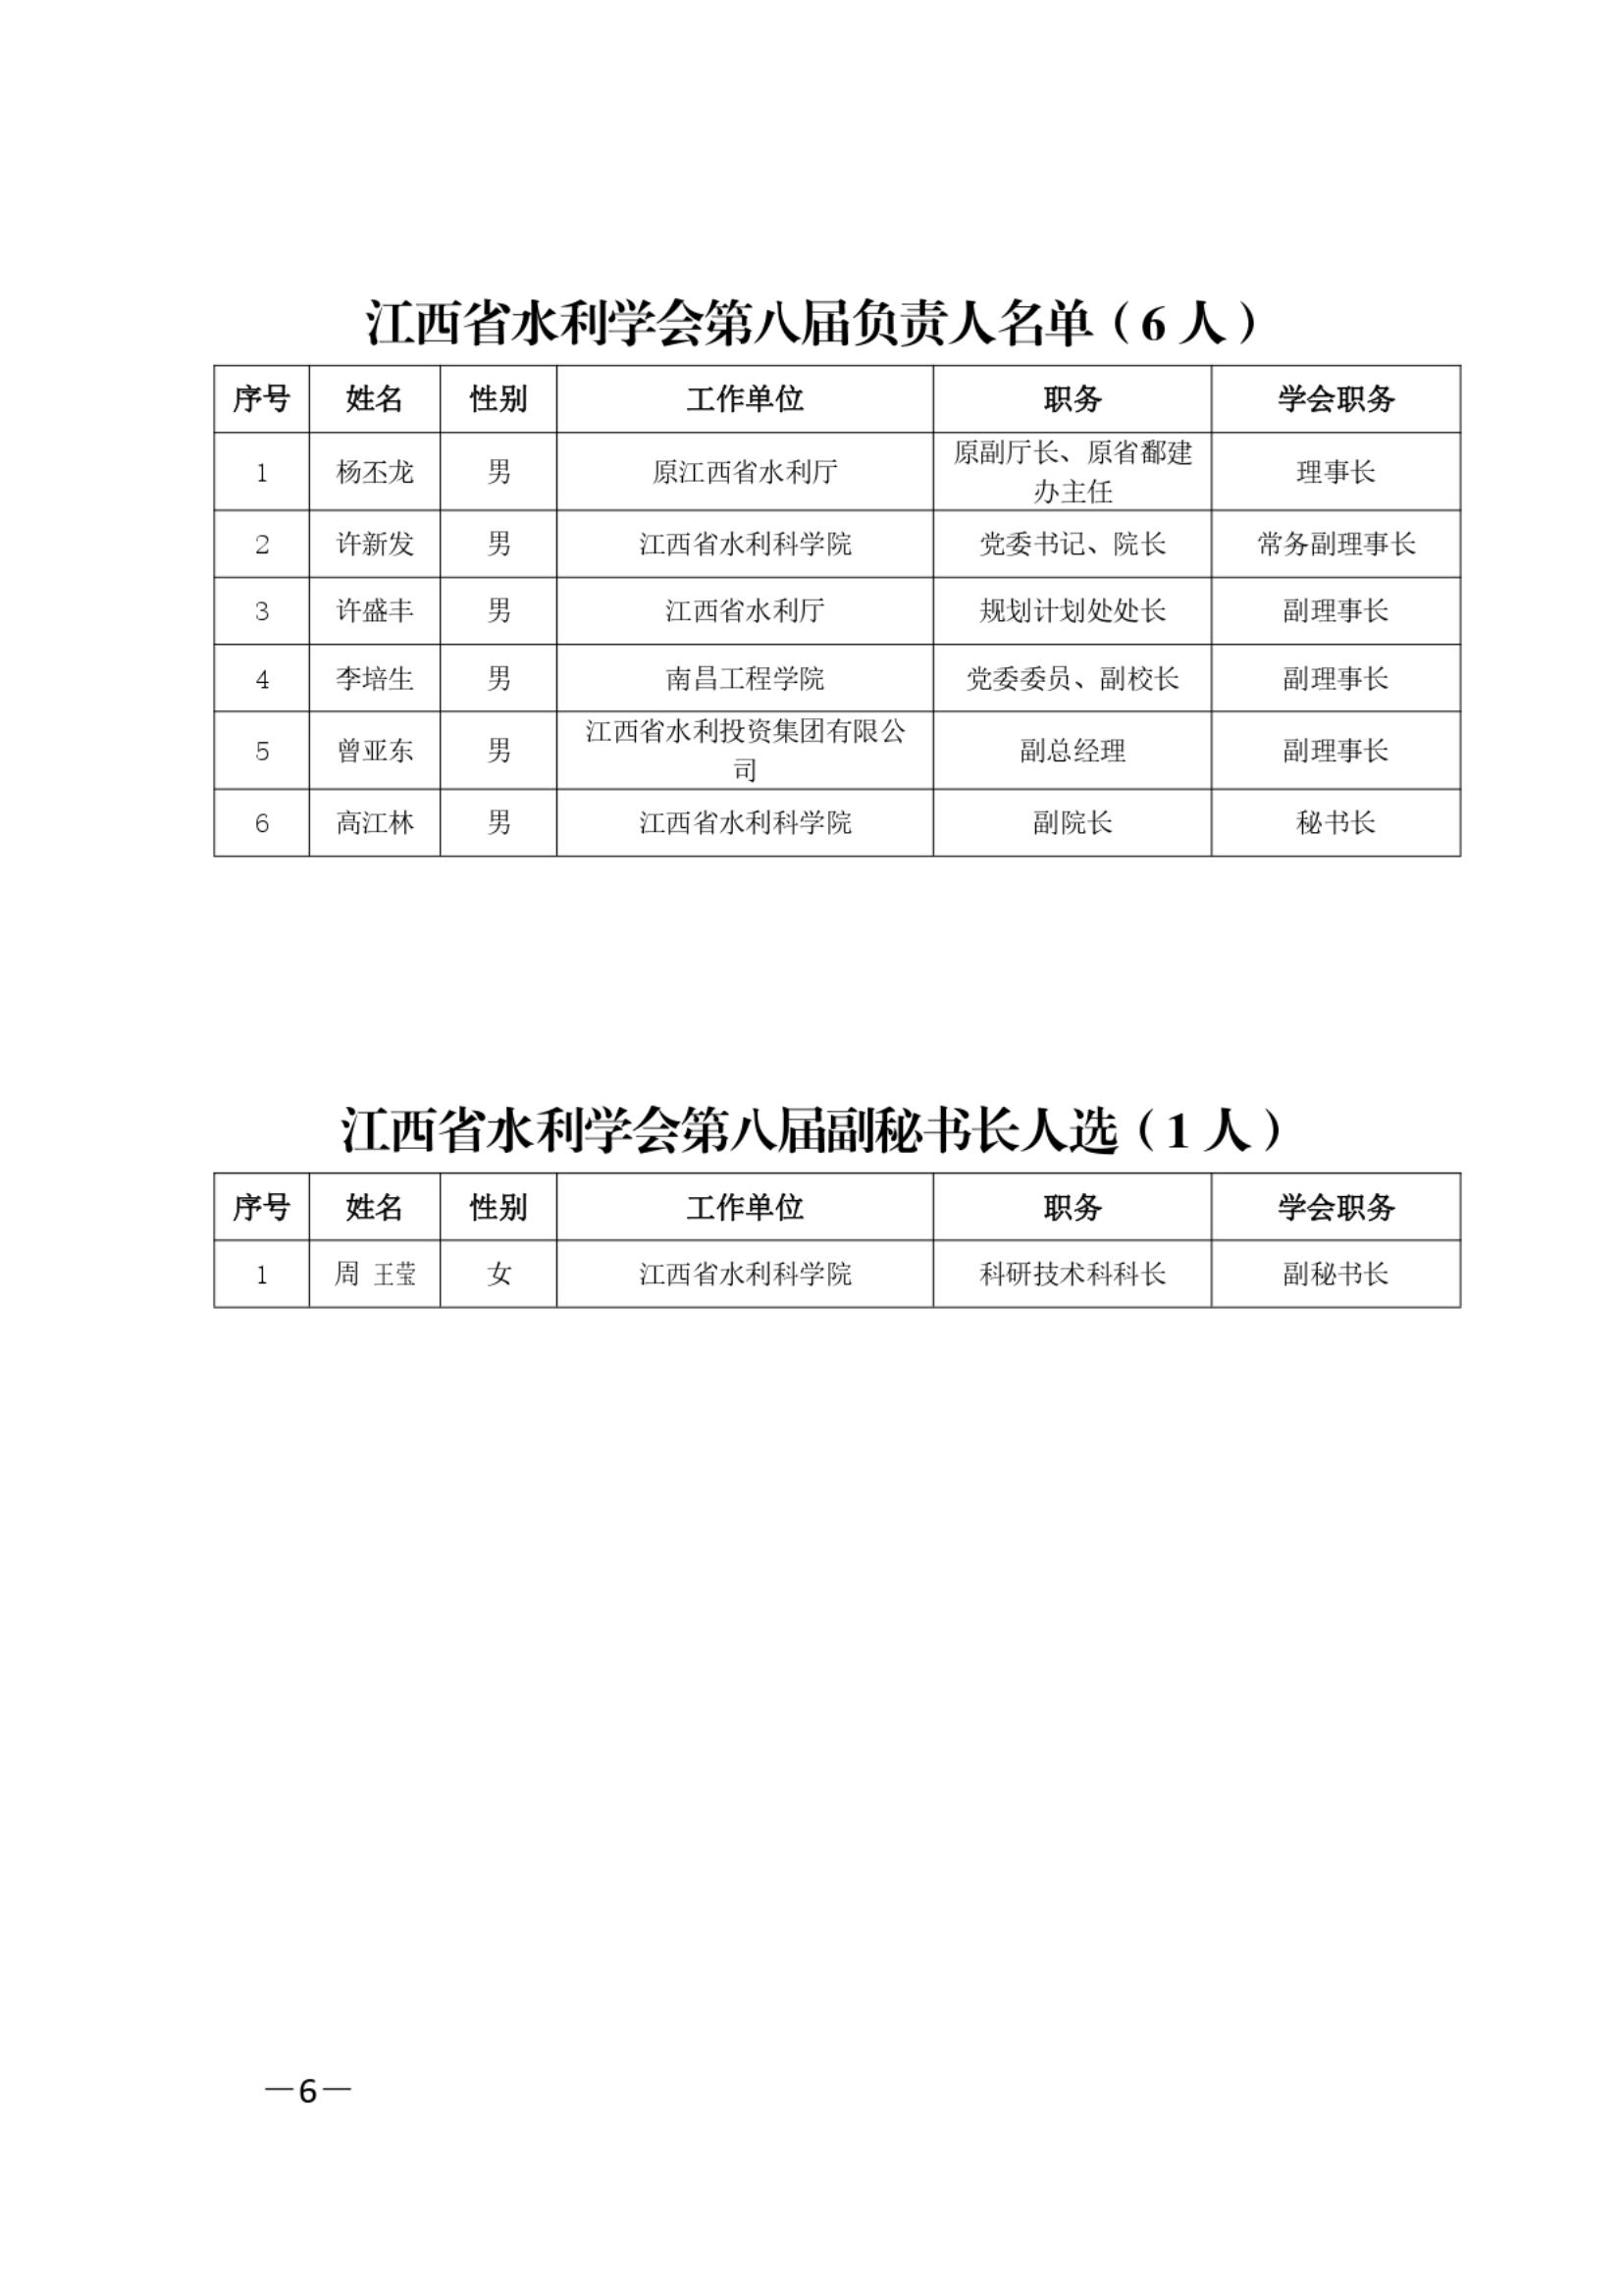 江西省水利学会关于第八届理事会选举结果的通知_05.jpg